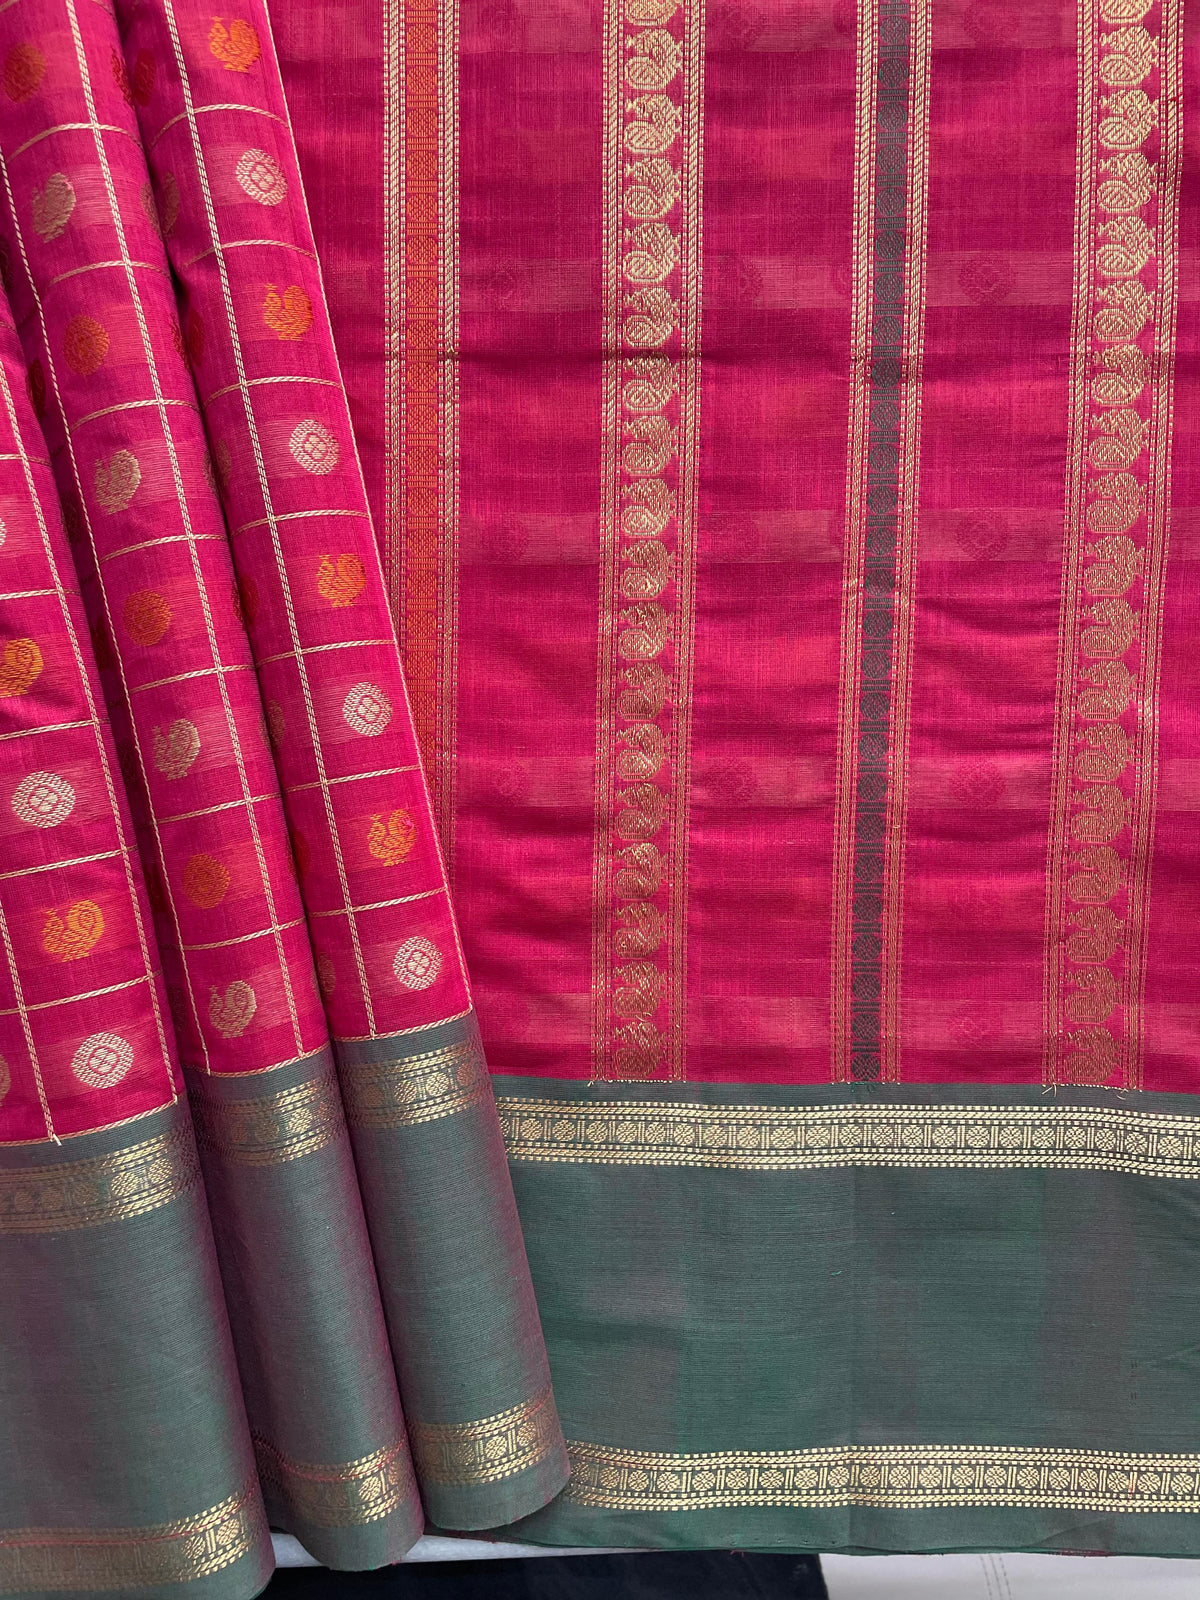 Pink 1000 (Ayiram Putta) Butta Handloom Kanchi Cotton Saree with Ganga Jamuna Border